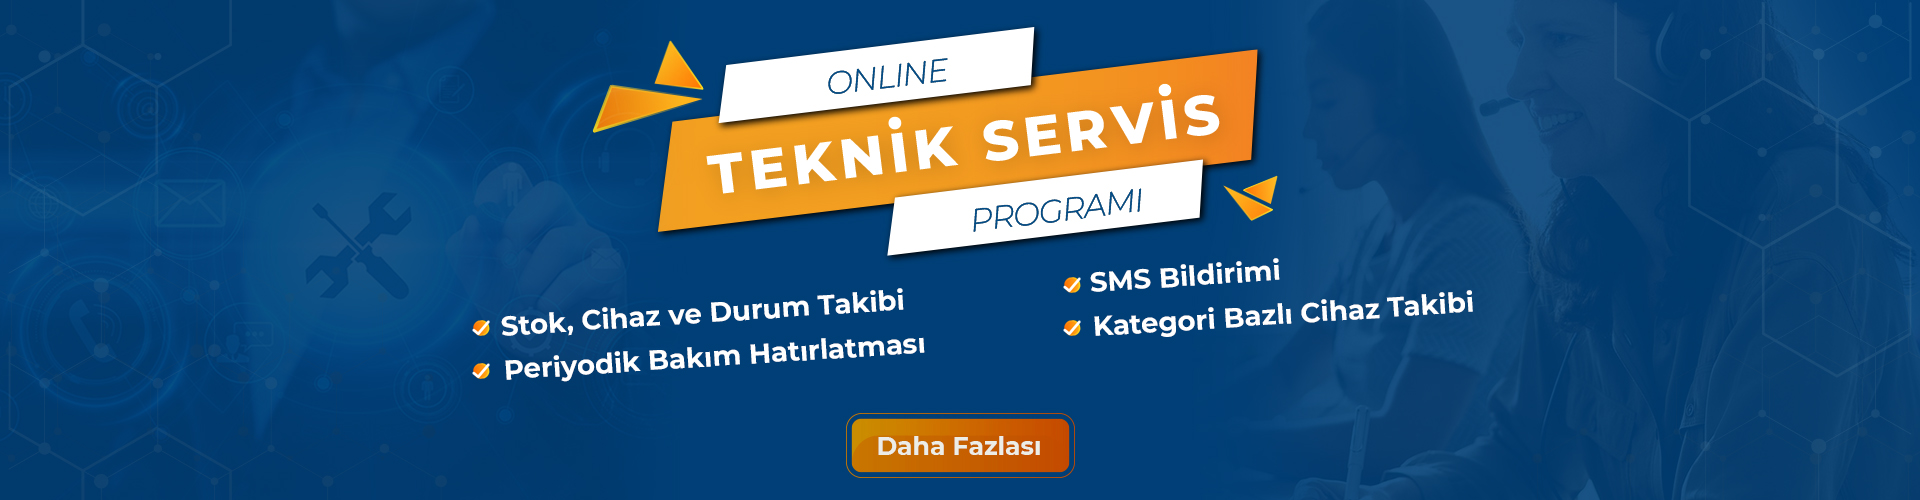 online teknik servis programı